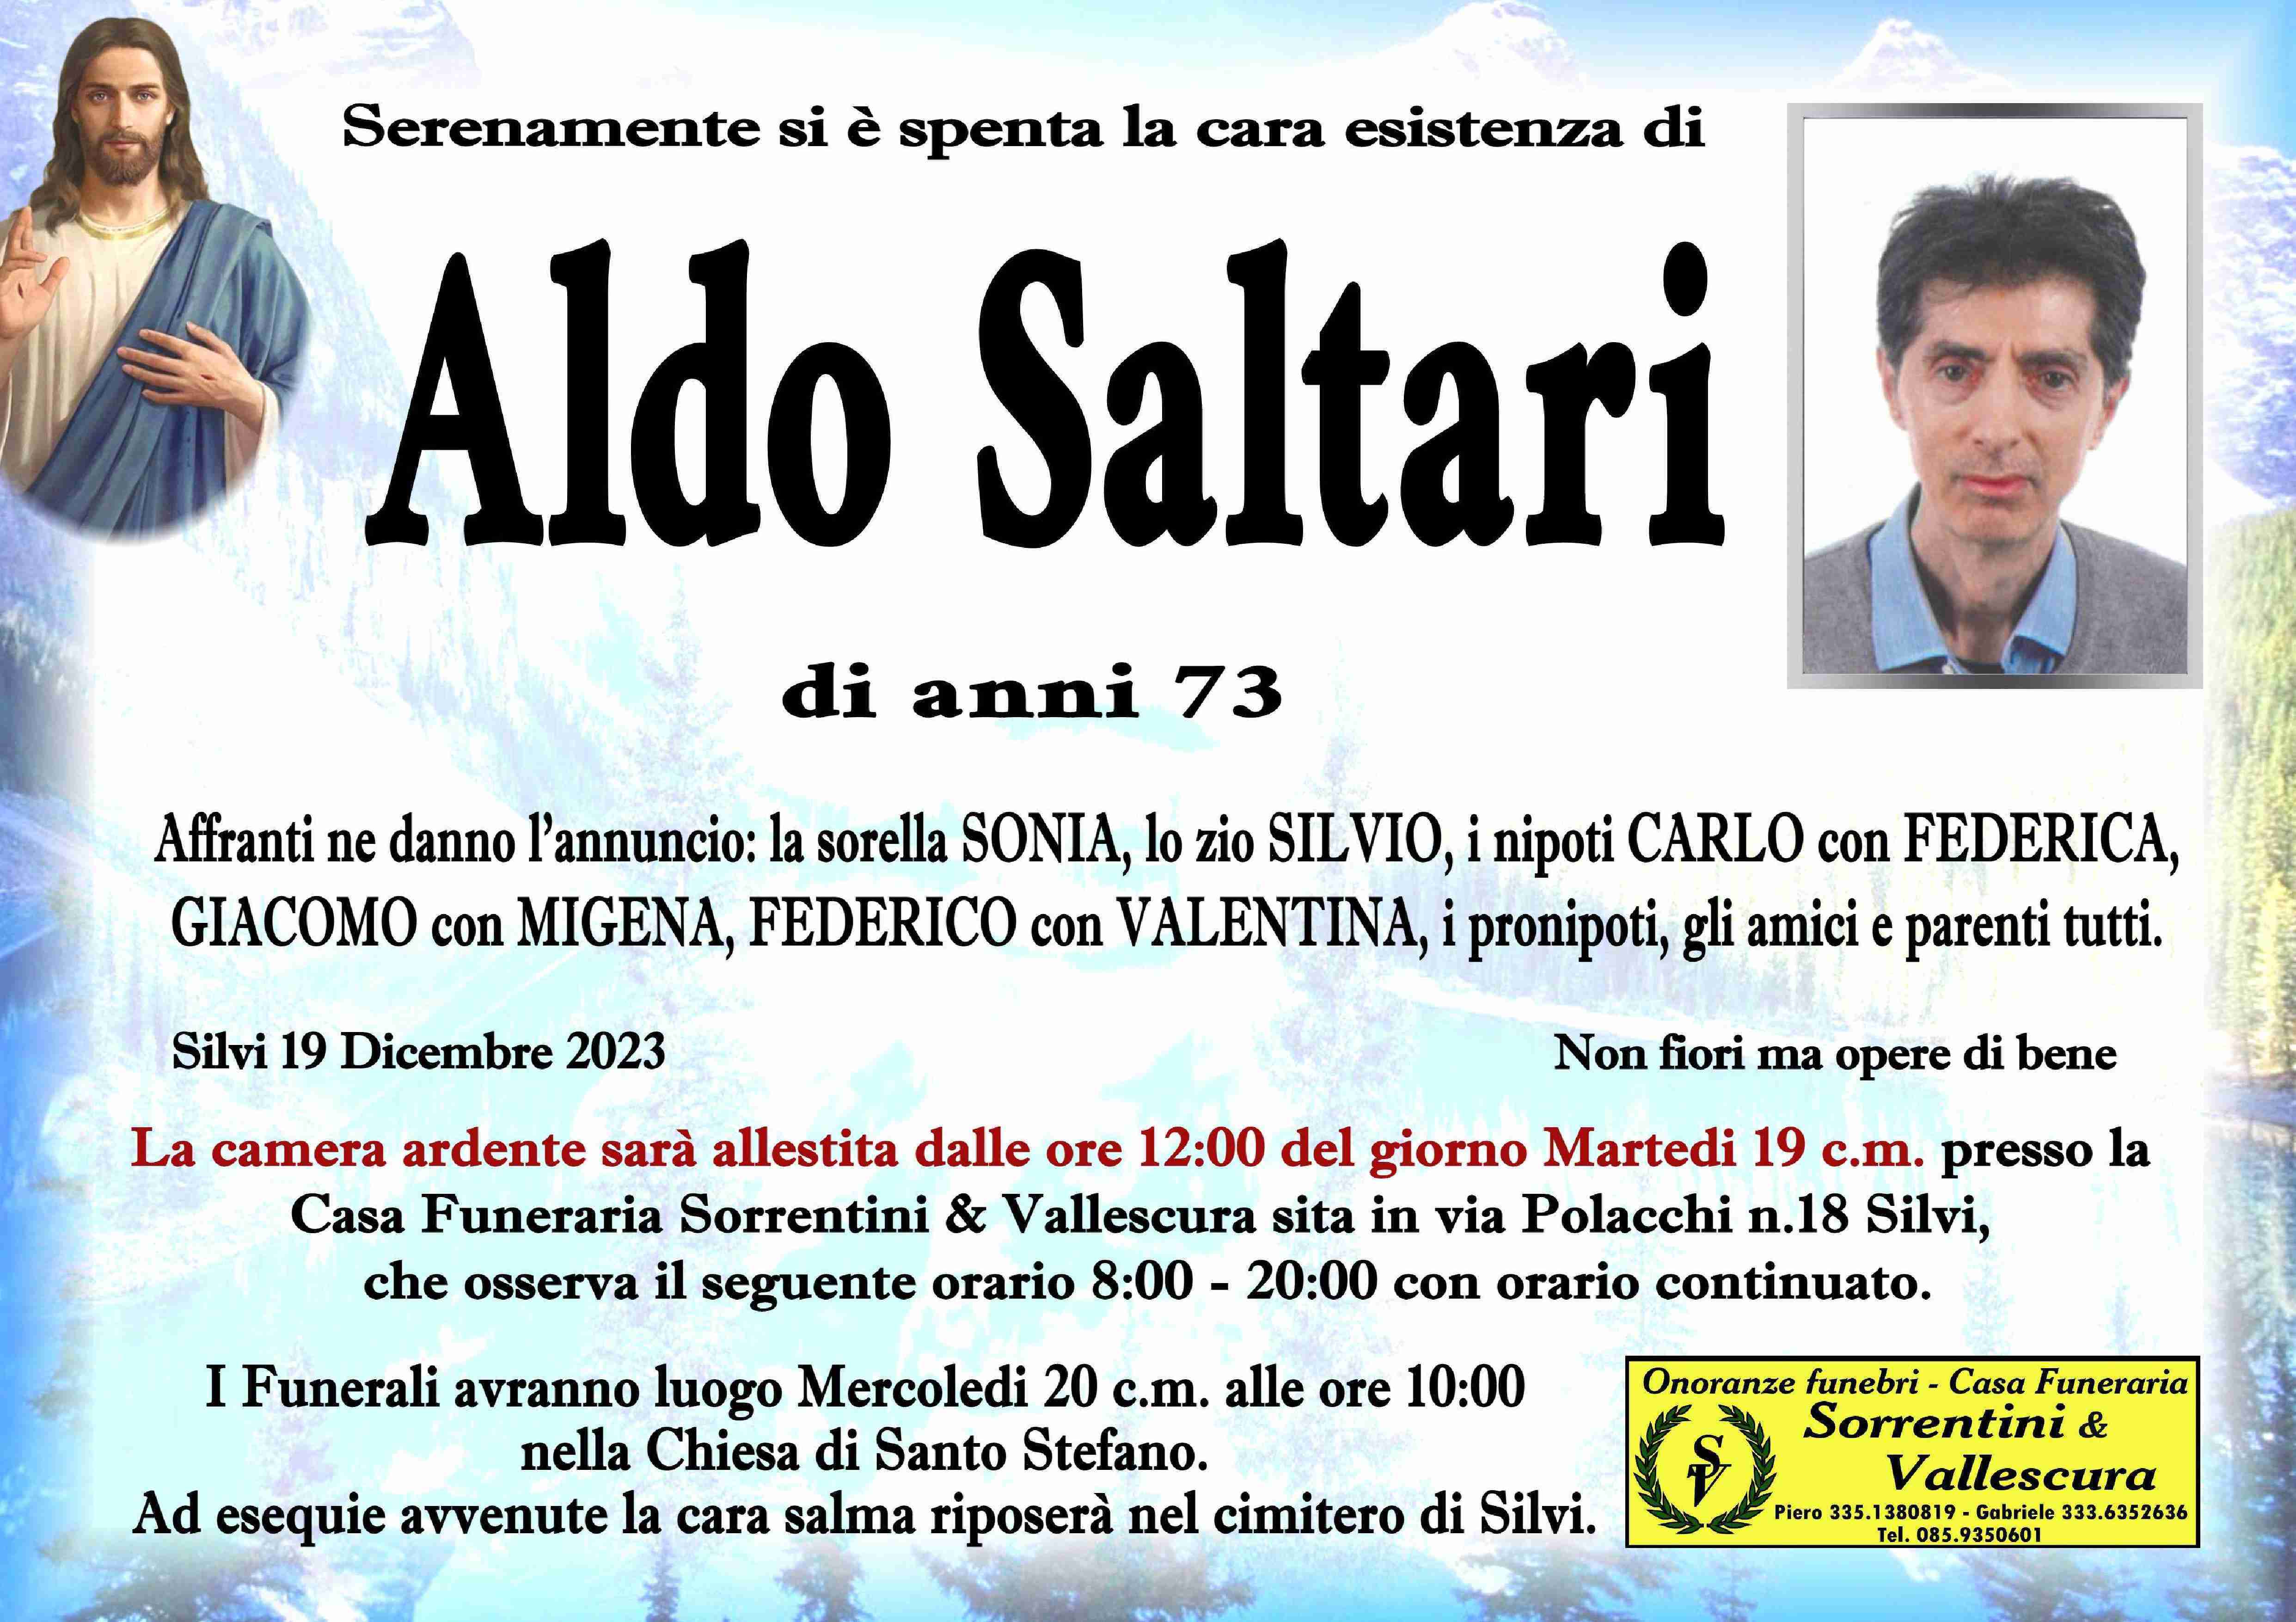 Aldo Saltari